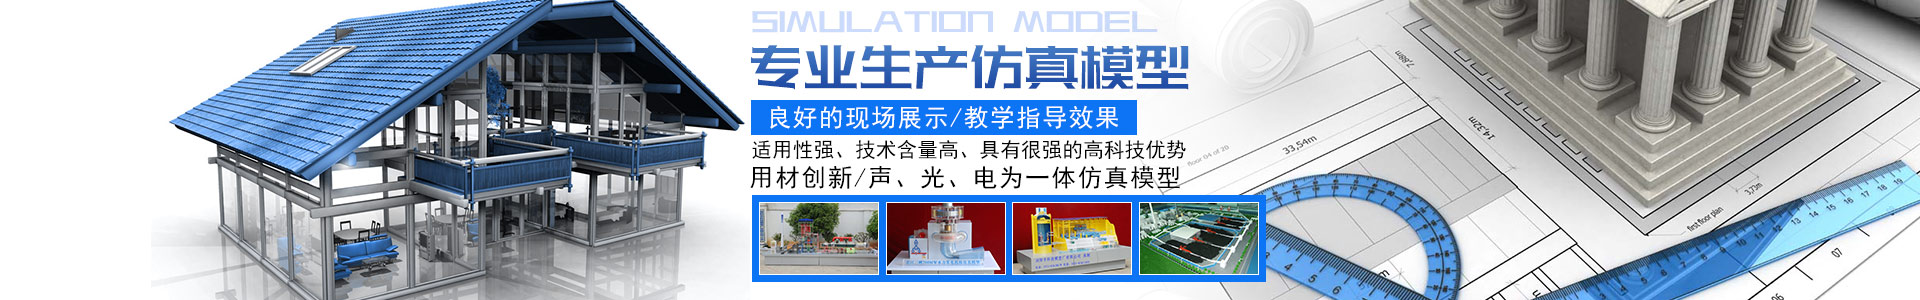 浏阳市科技模型厂有限公司 - 浏阳教学模型|浏阳展览模型|浏阳科技馆模型